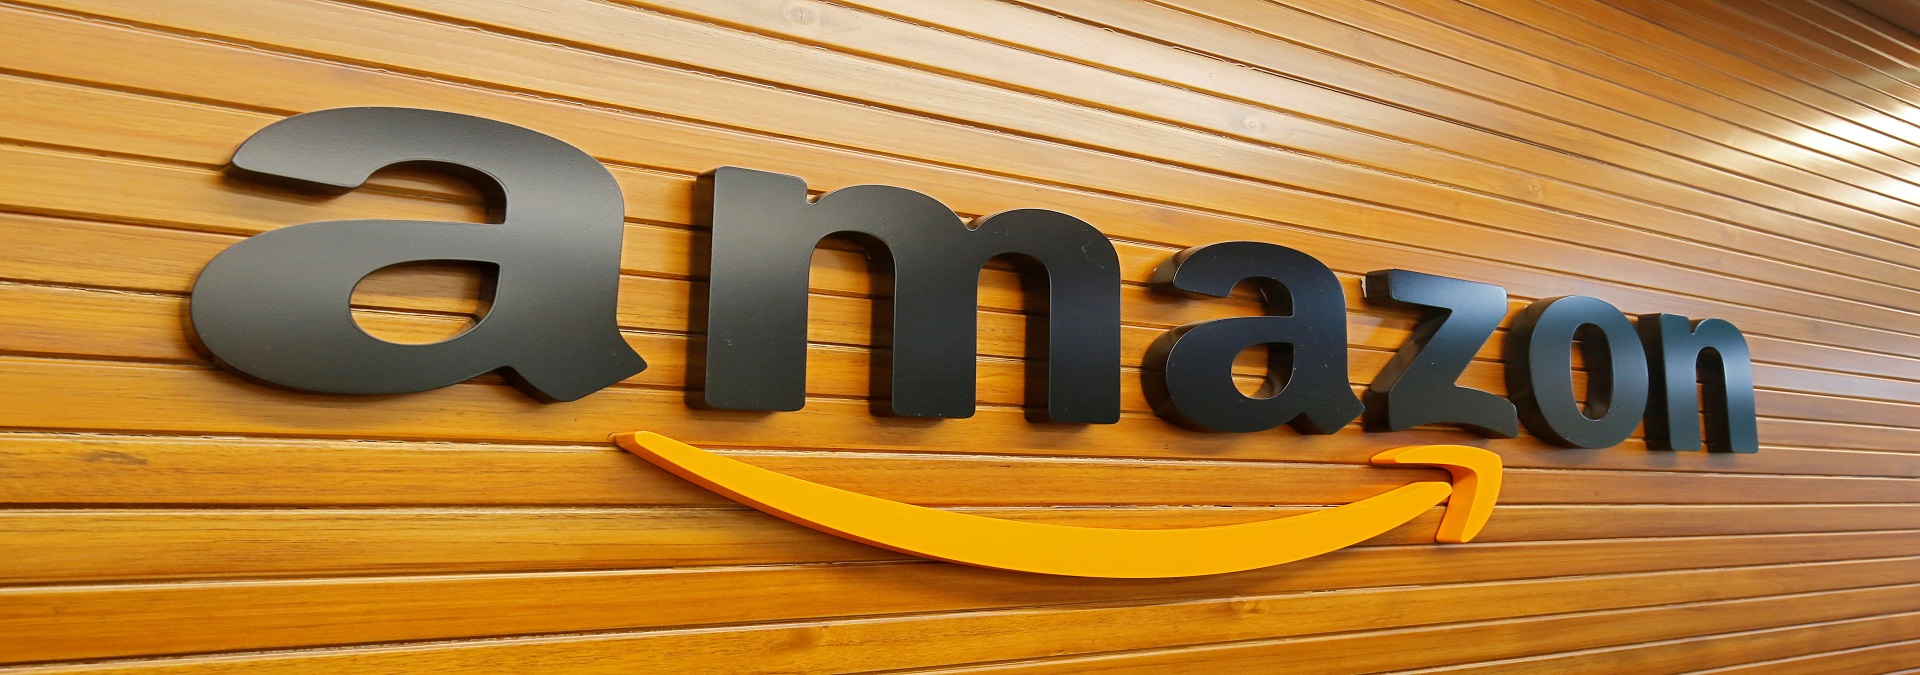 Amazon Prime, ekstra ücret ödenerek üyeliğin "yükseltilmesi" mantığı ile çalışıyor.